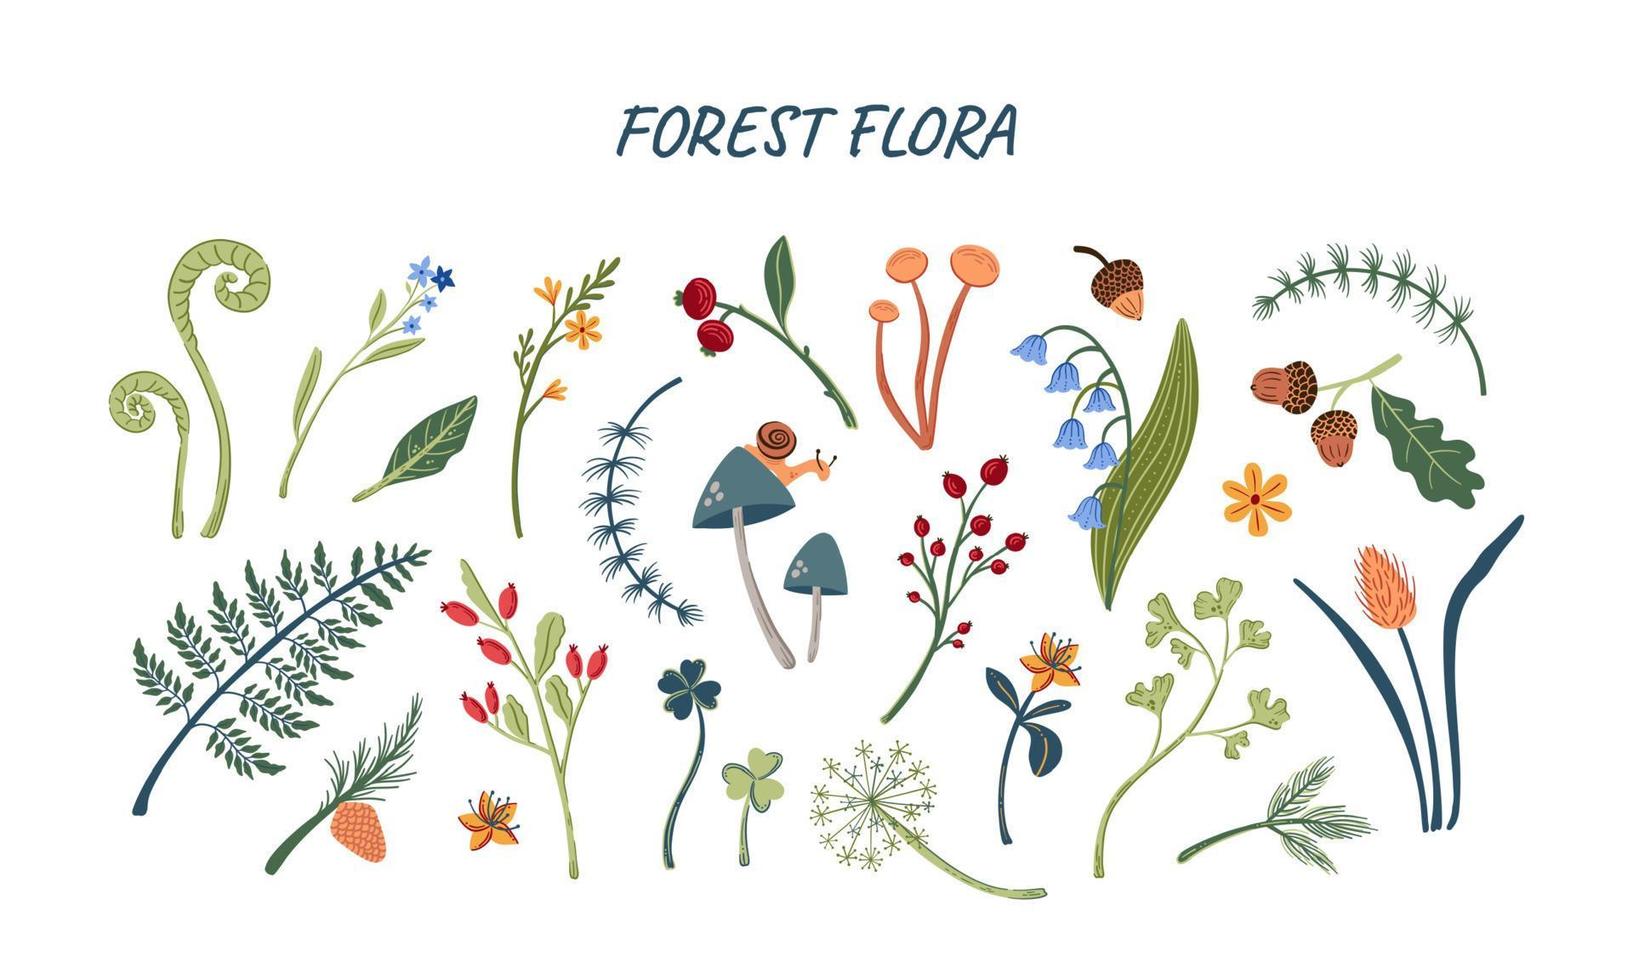 skogsflora stor uppsättning handritade växter, svampar och löv vektorillustration. skogsbotanik isolerade objekt vektor